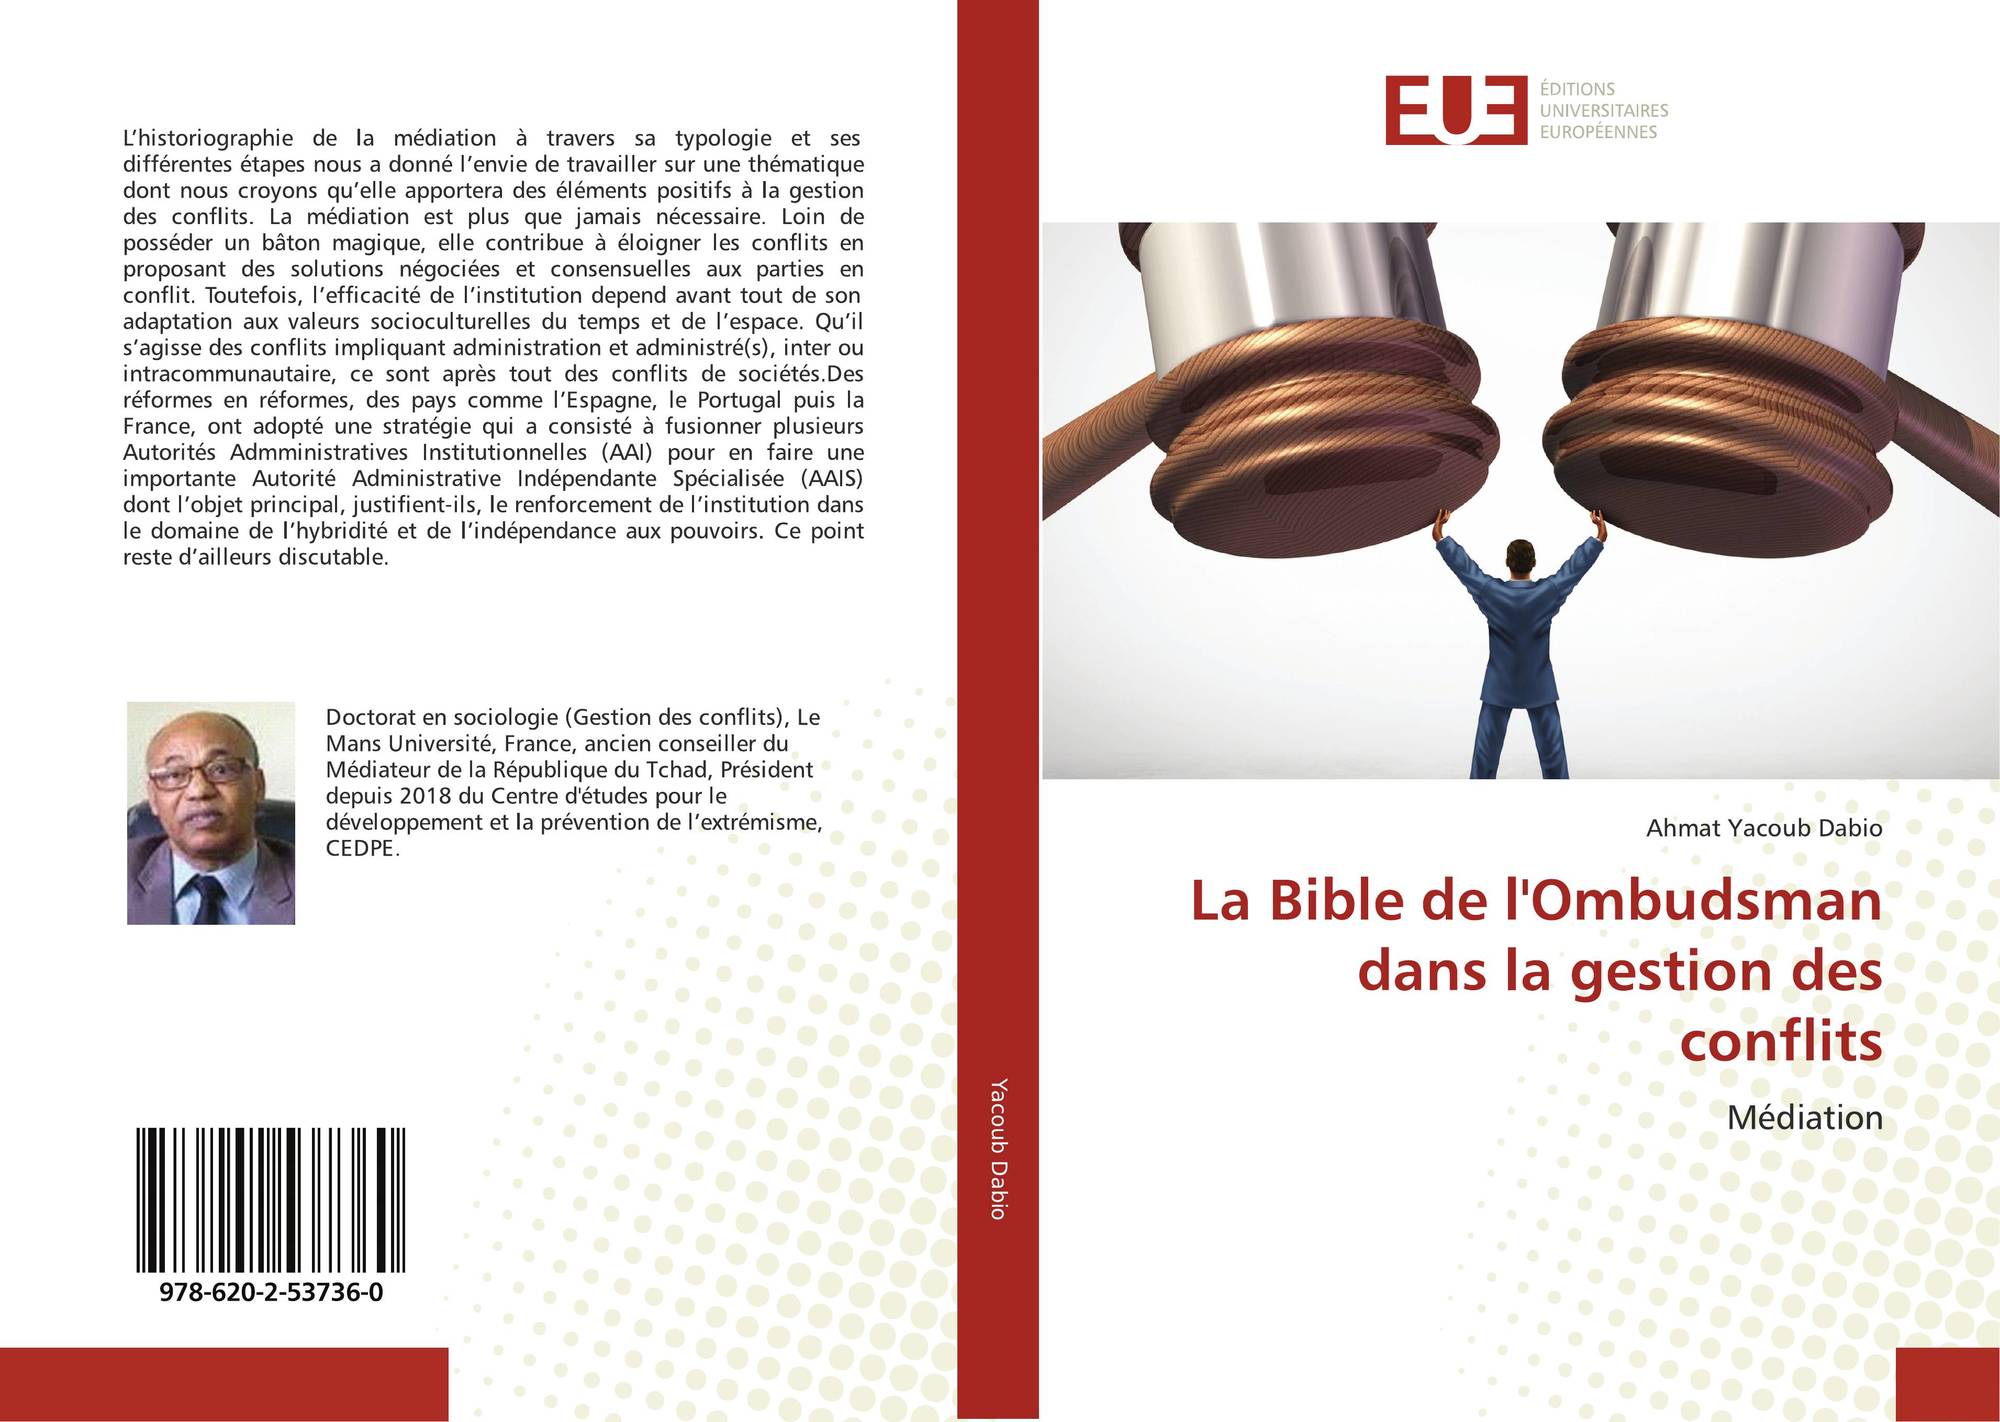 "La bible de l'Ombudsman dans la gestion des conflits"